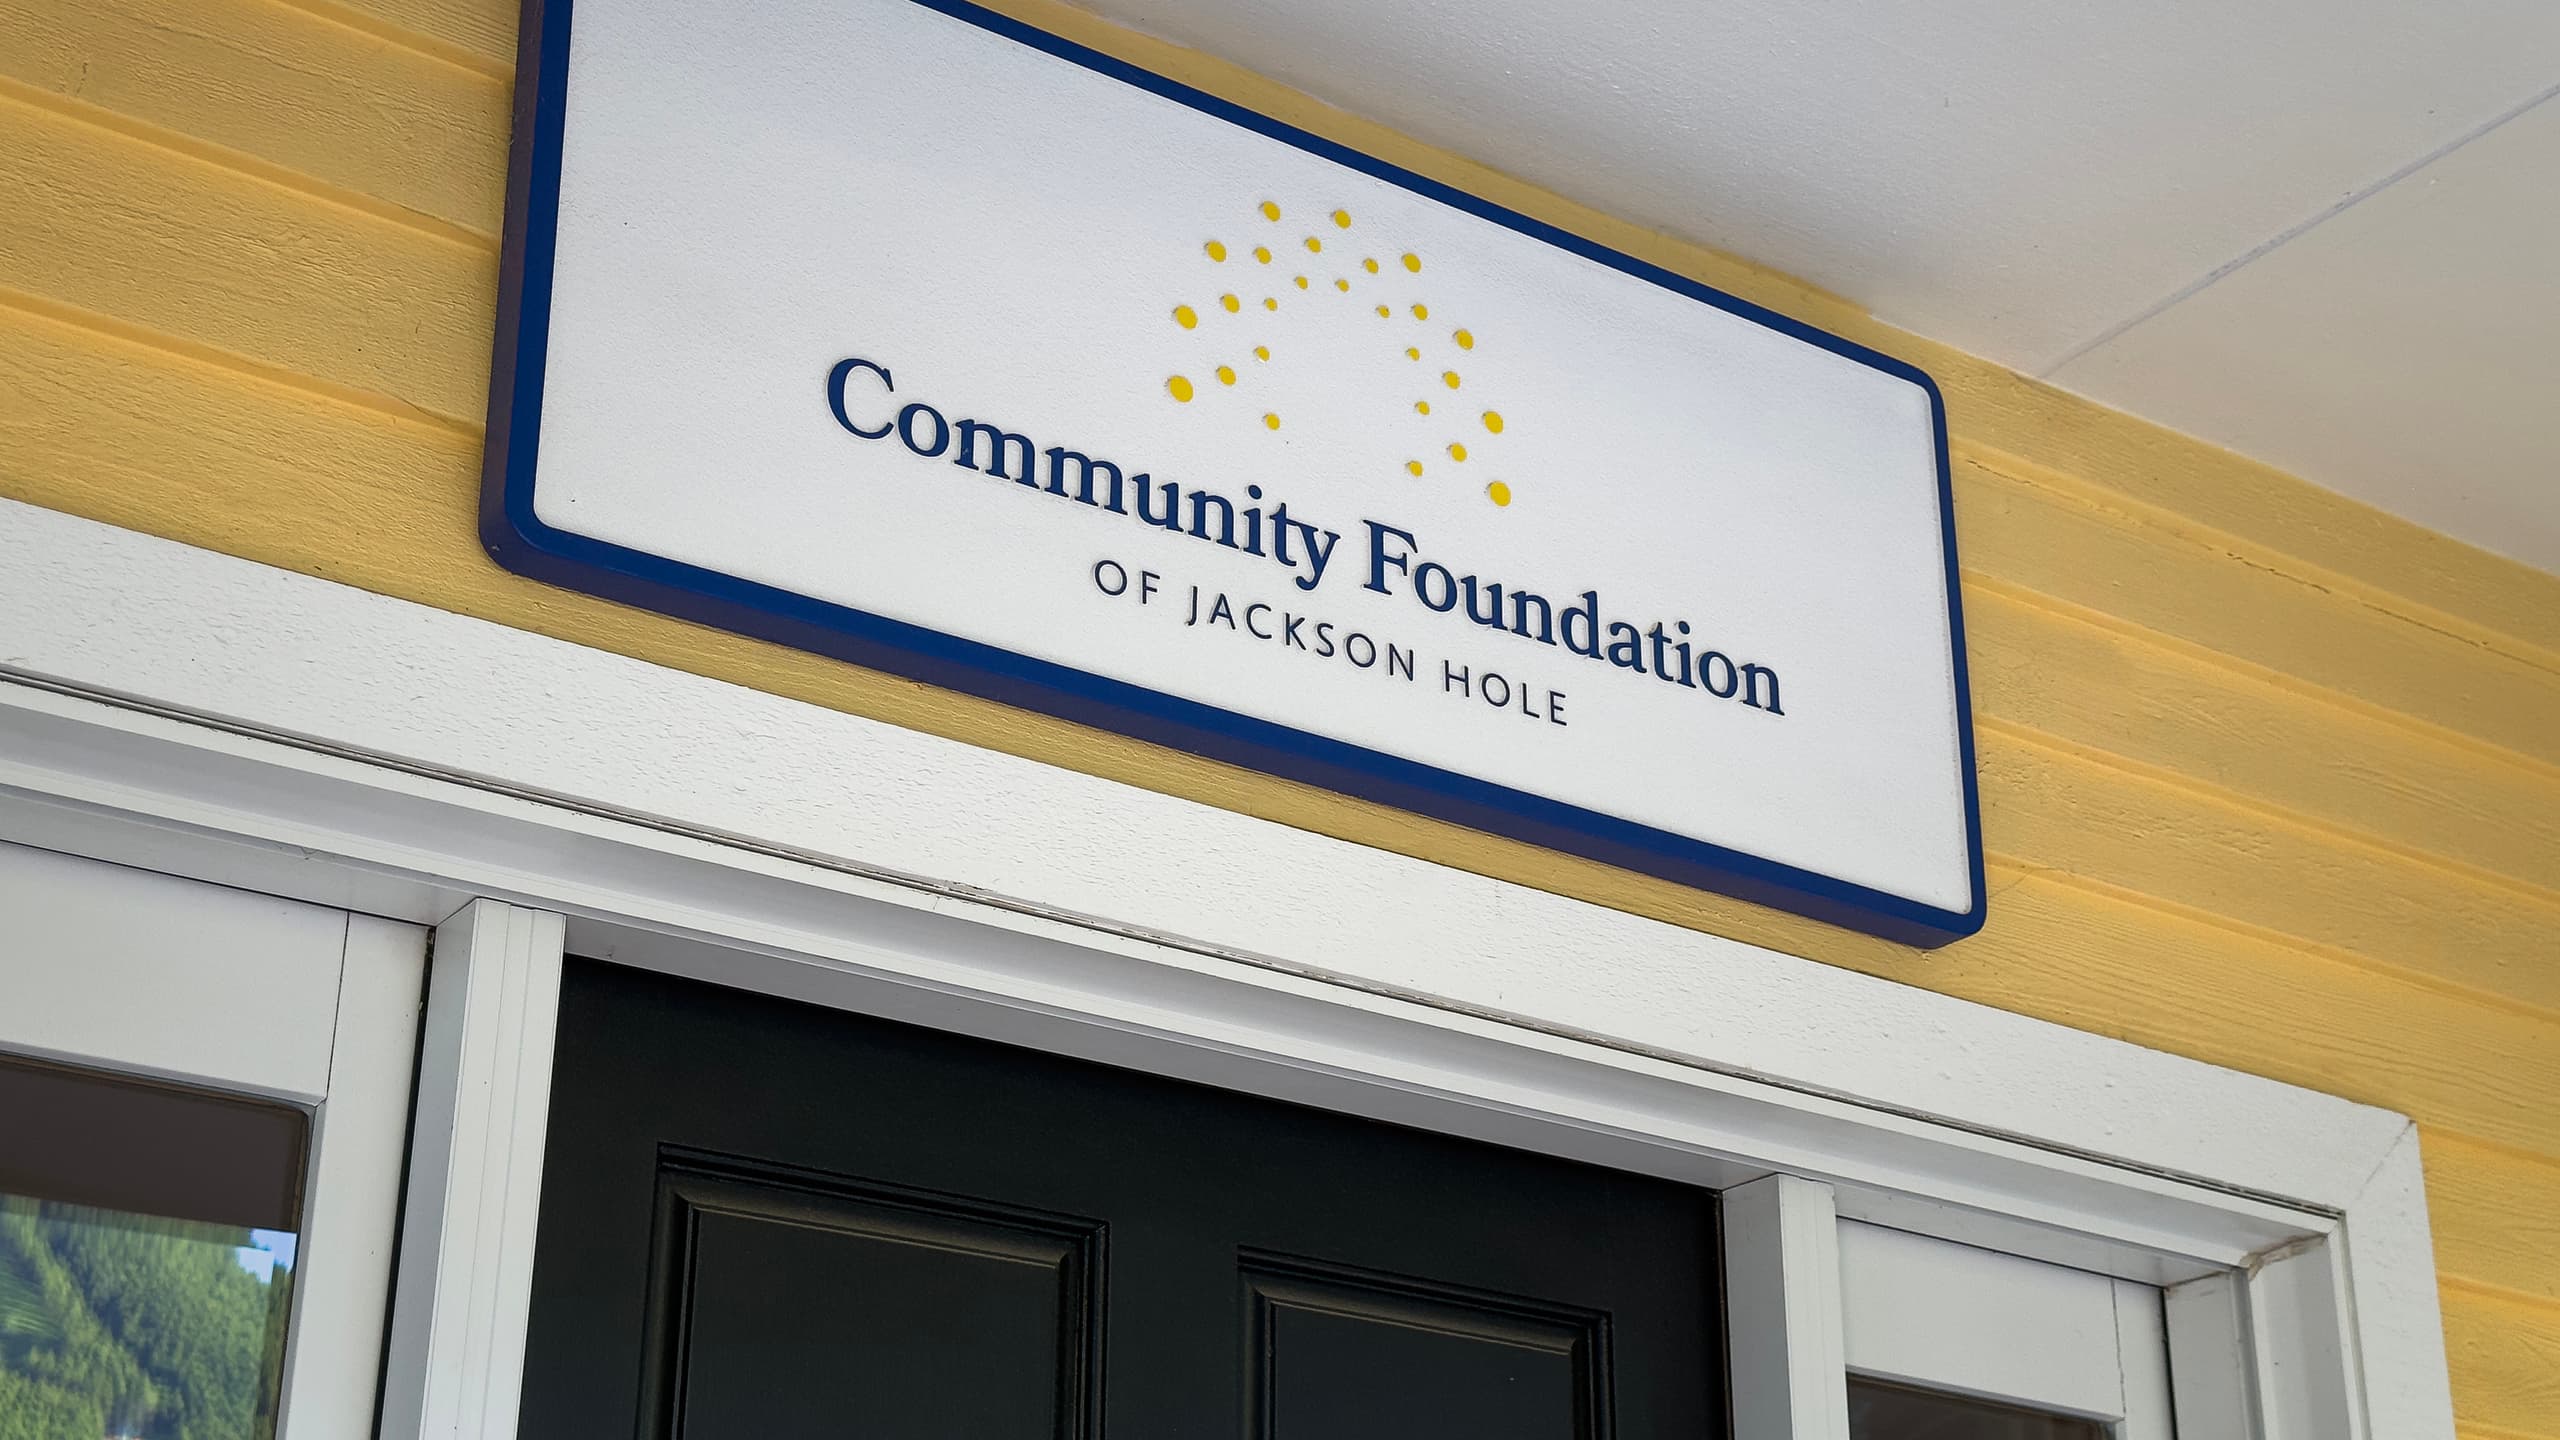 Community Foundation Of Jackson Hole Office Exterior Signage